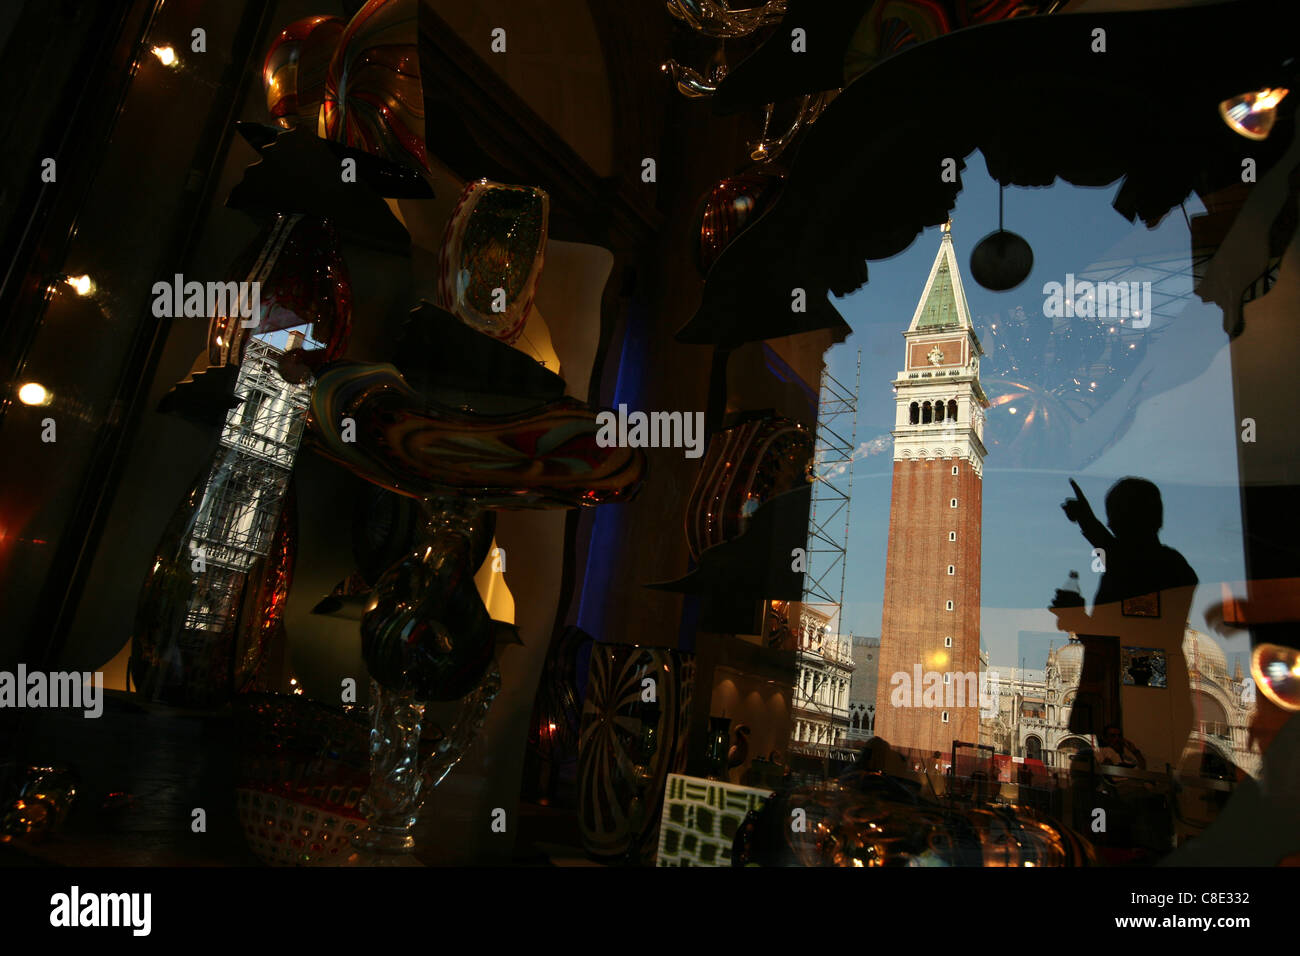 Reflexion des Campanile in einem Schaufenster mit venezianischem Glas am Piazza San Marco in Venedig, Italien. Stockfoto